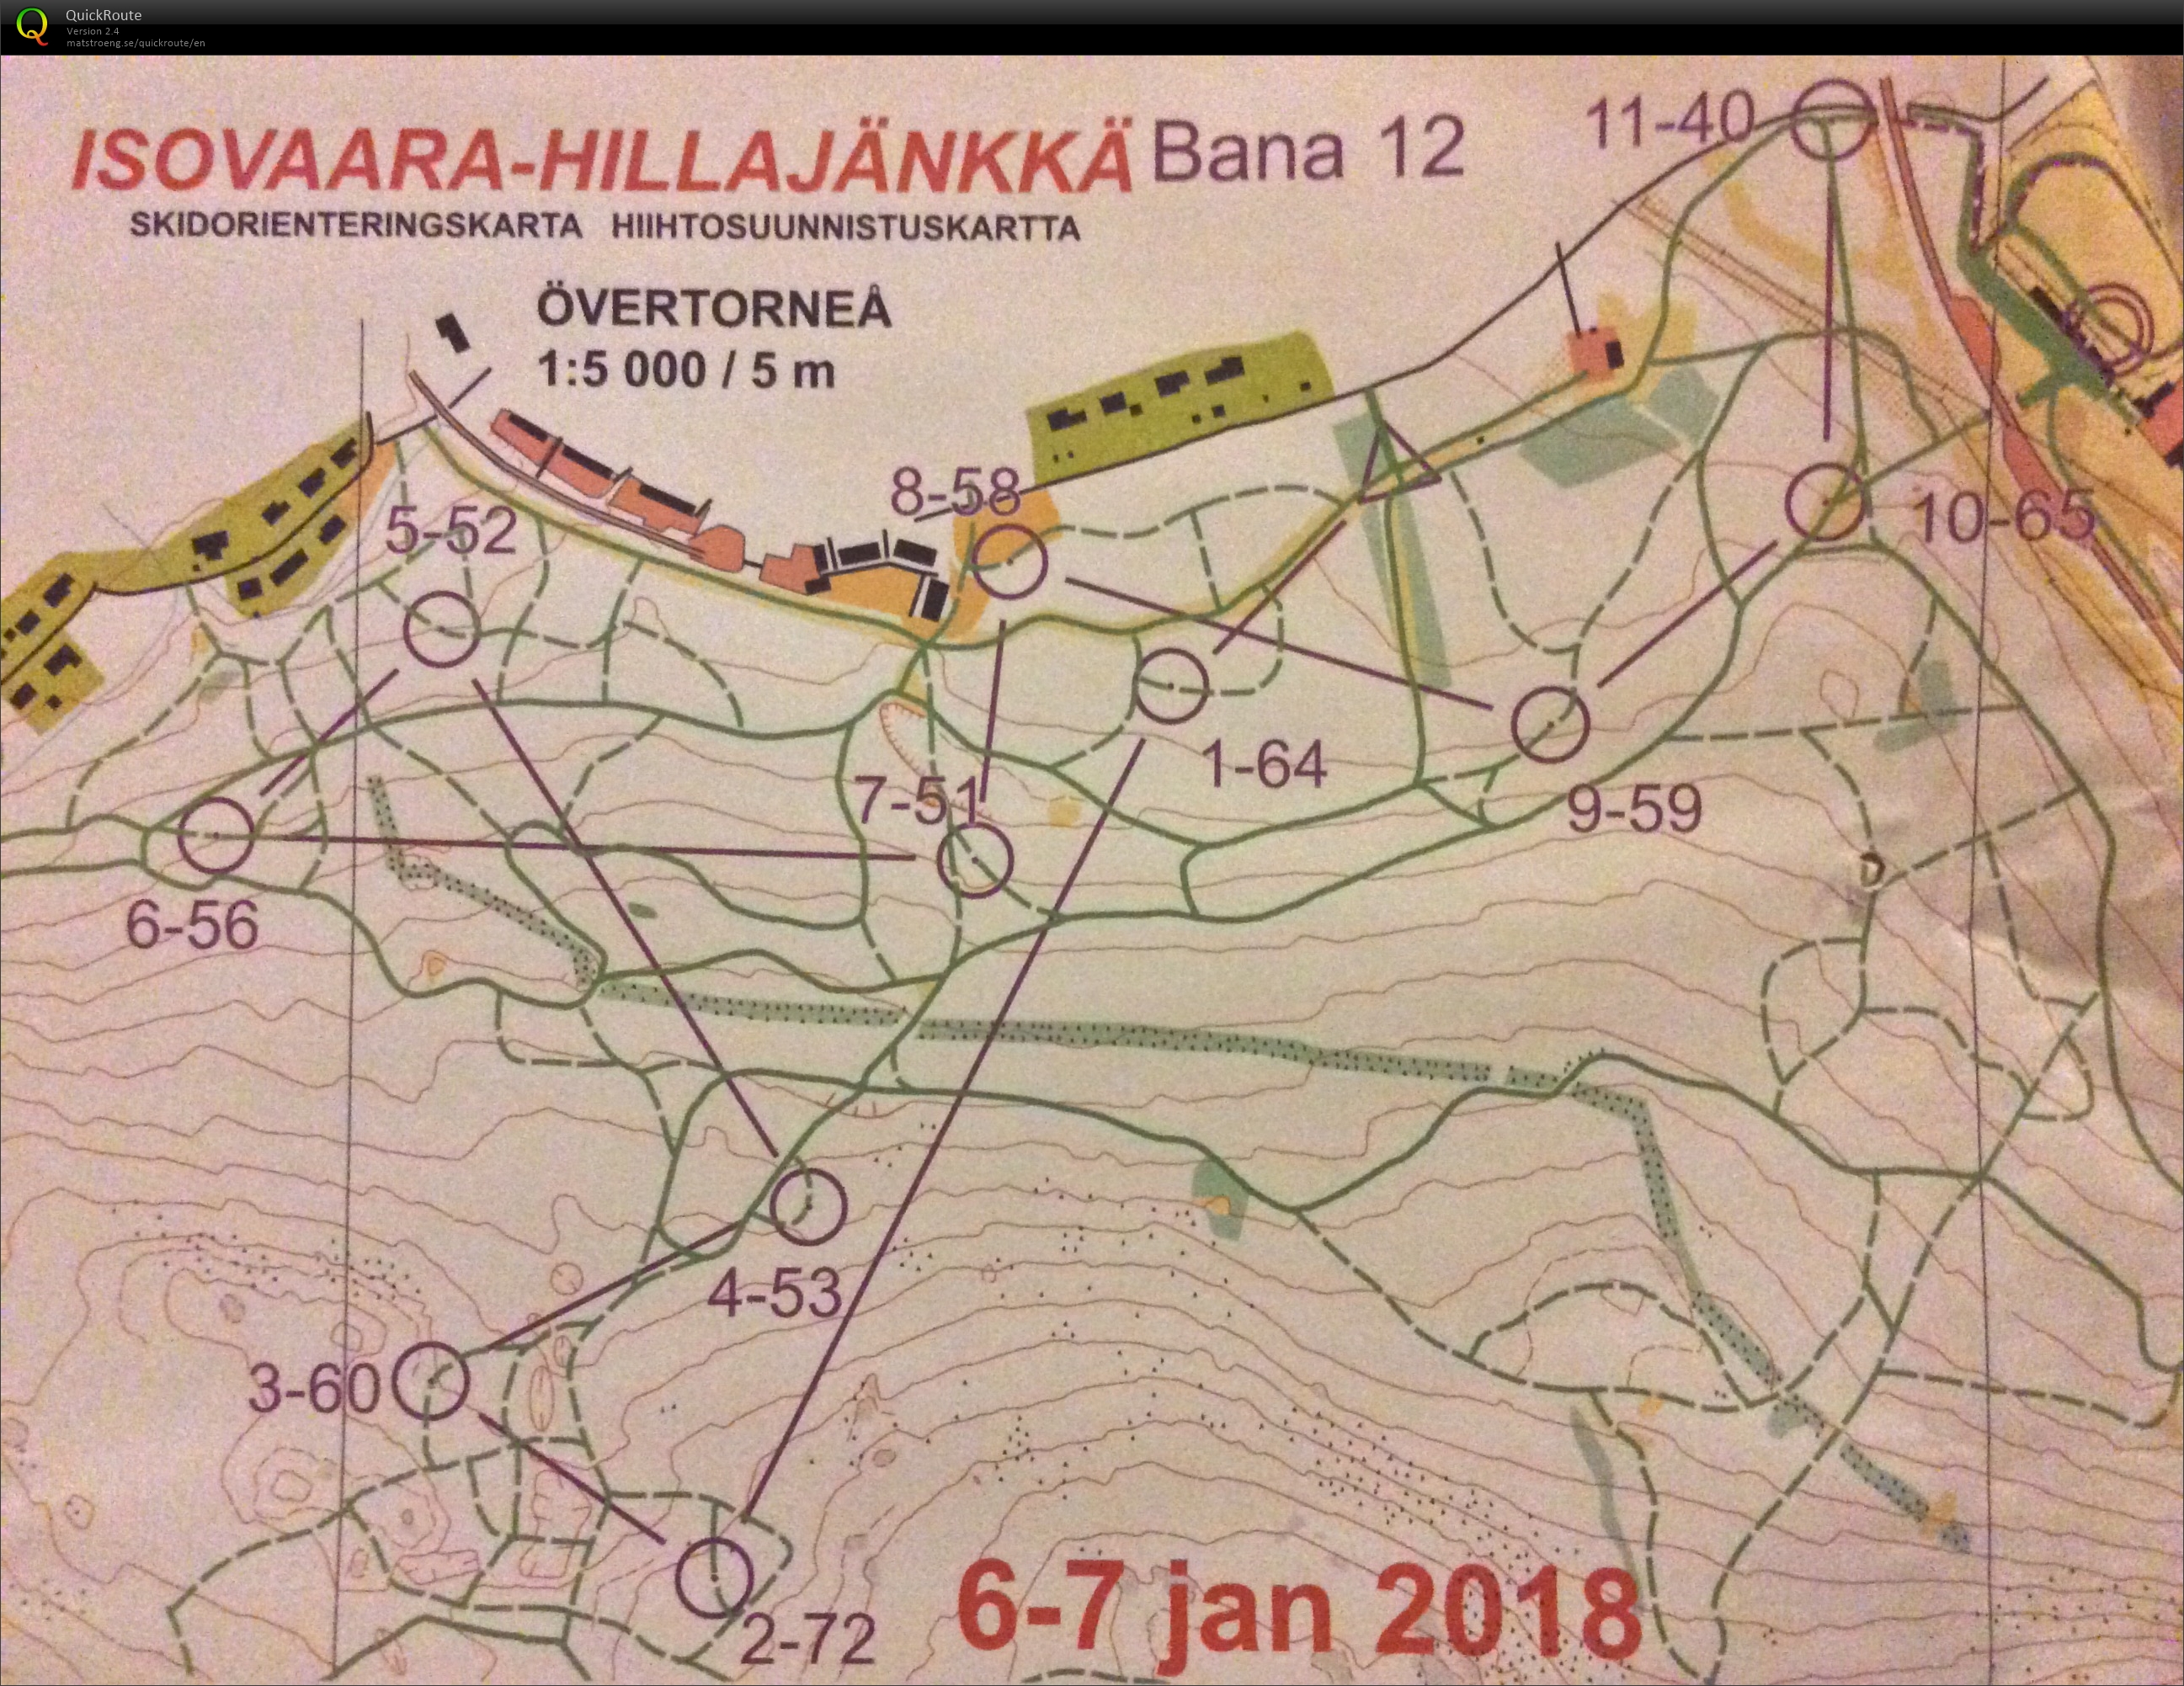 Skidorientering Övertorneå Sprint (2018-01-07)